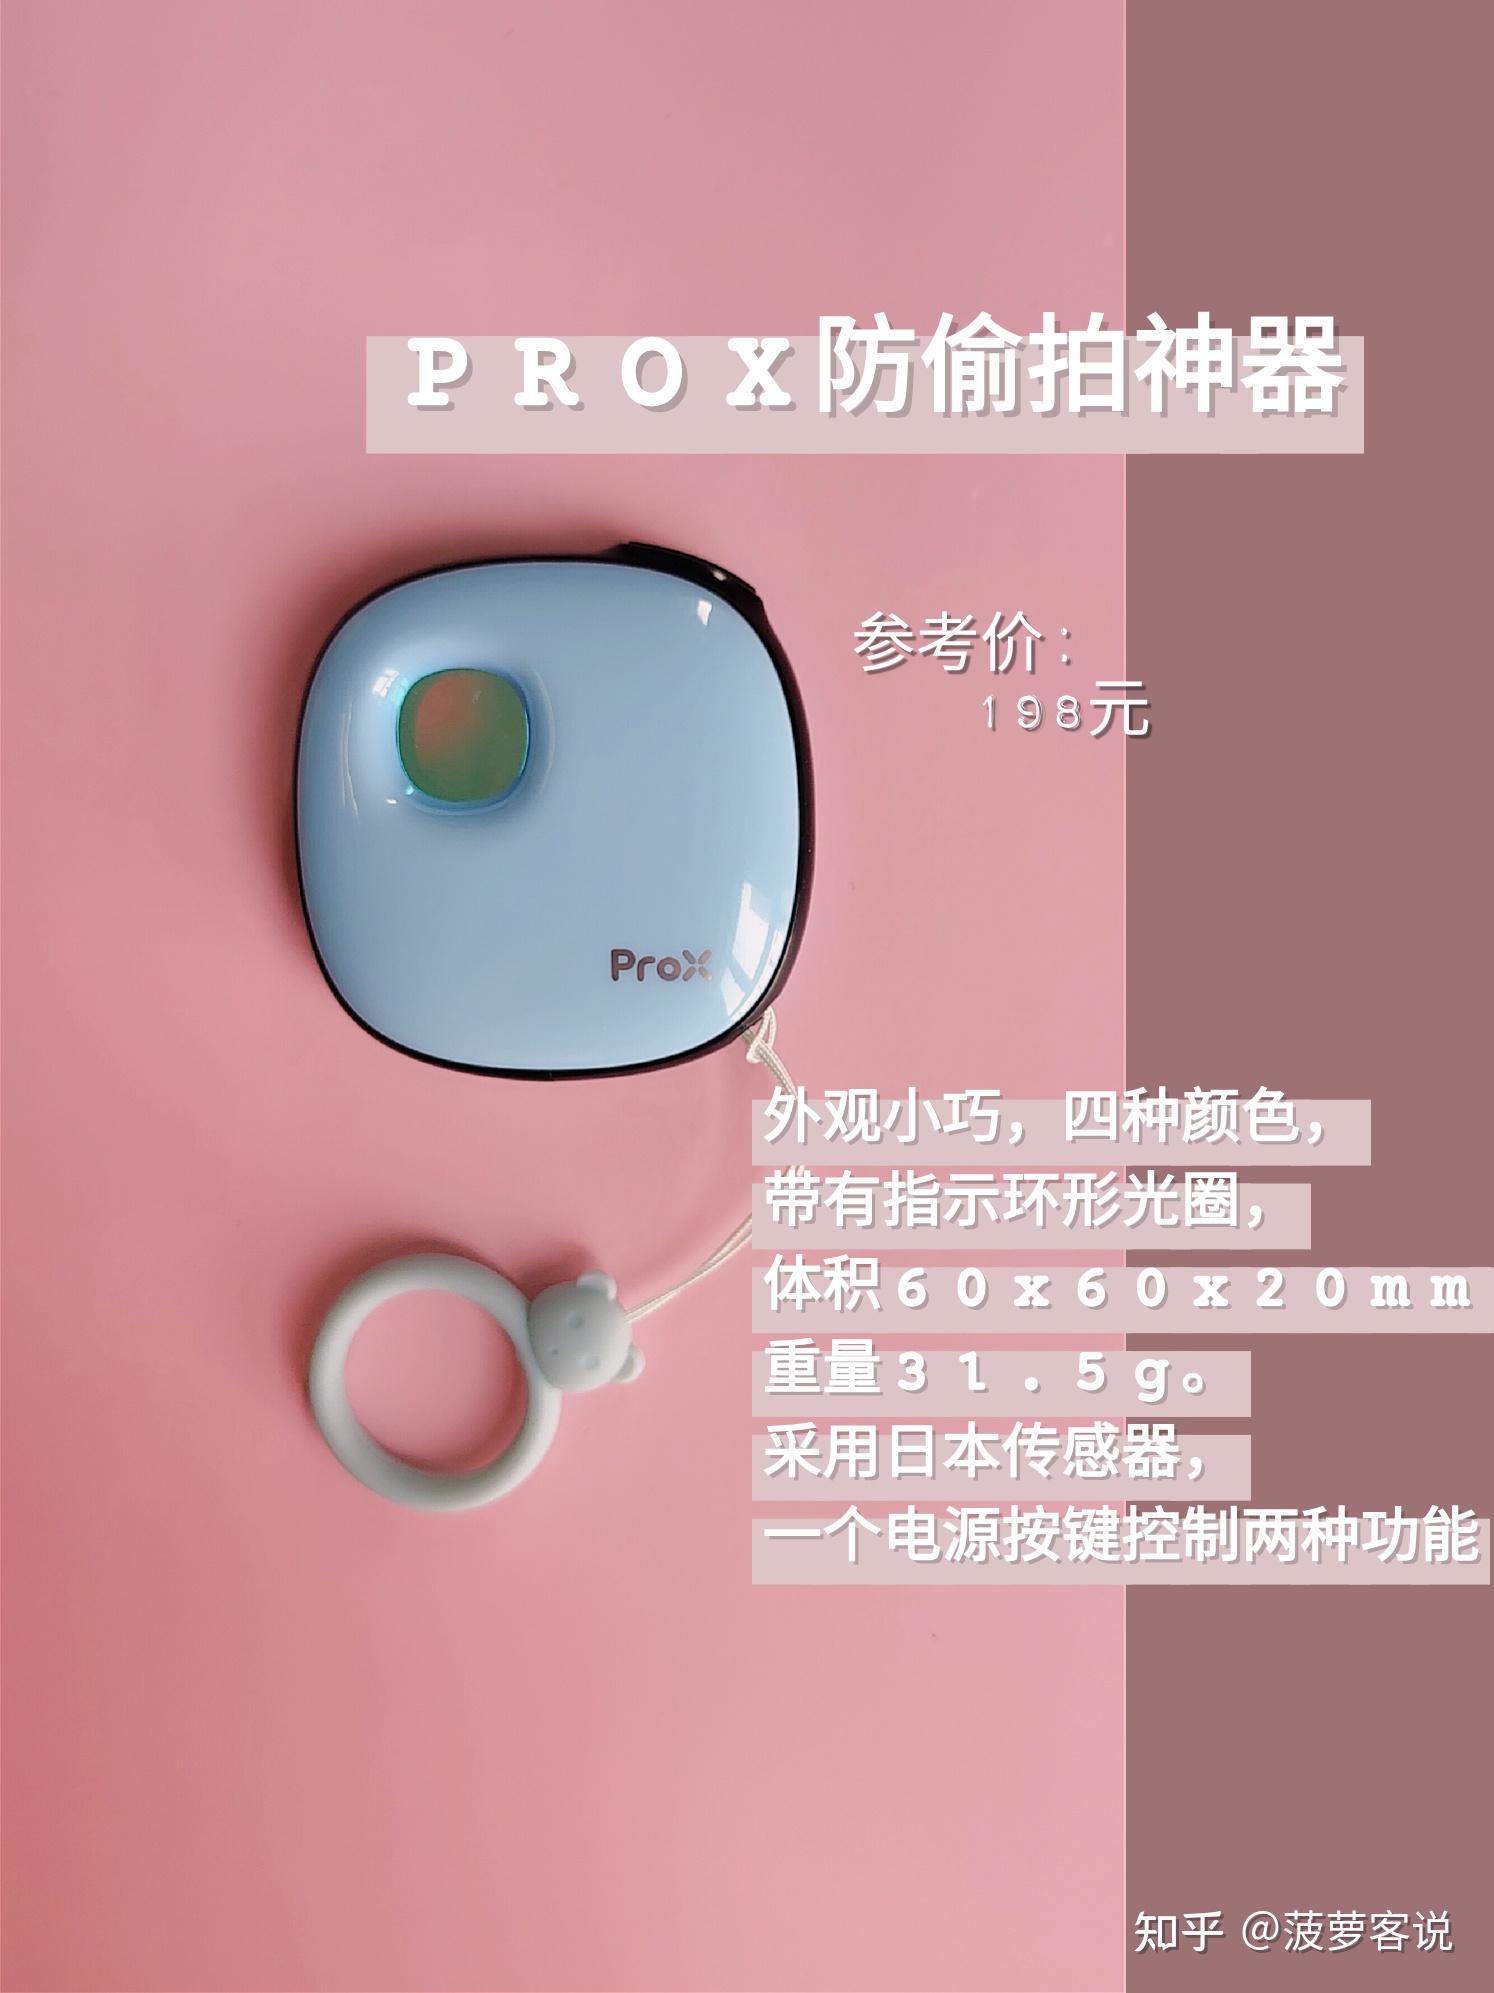 偷拍神器？佳能在日本推出了用于远摄的新型Power Shot ZOOM紧凑型单眼式相机 - 知乎